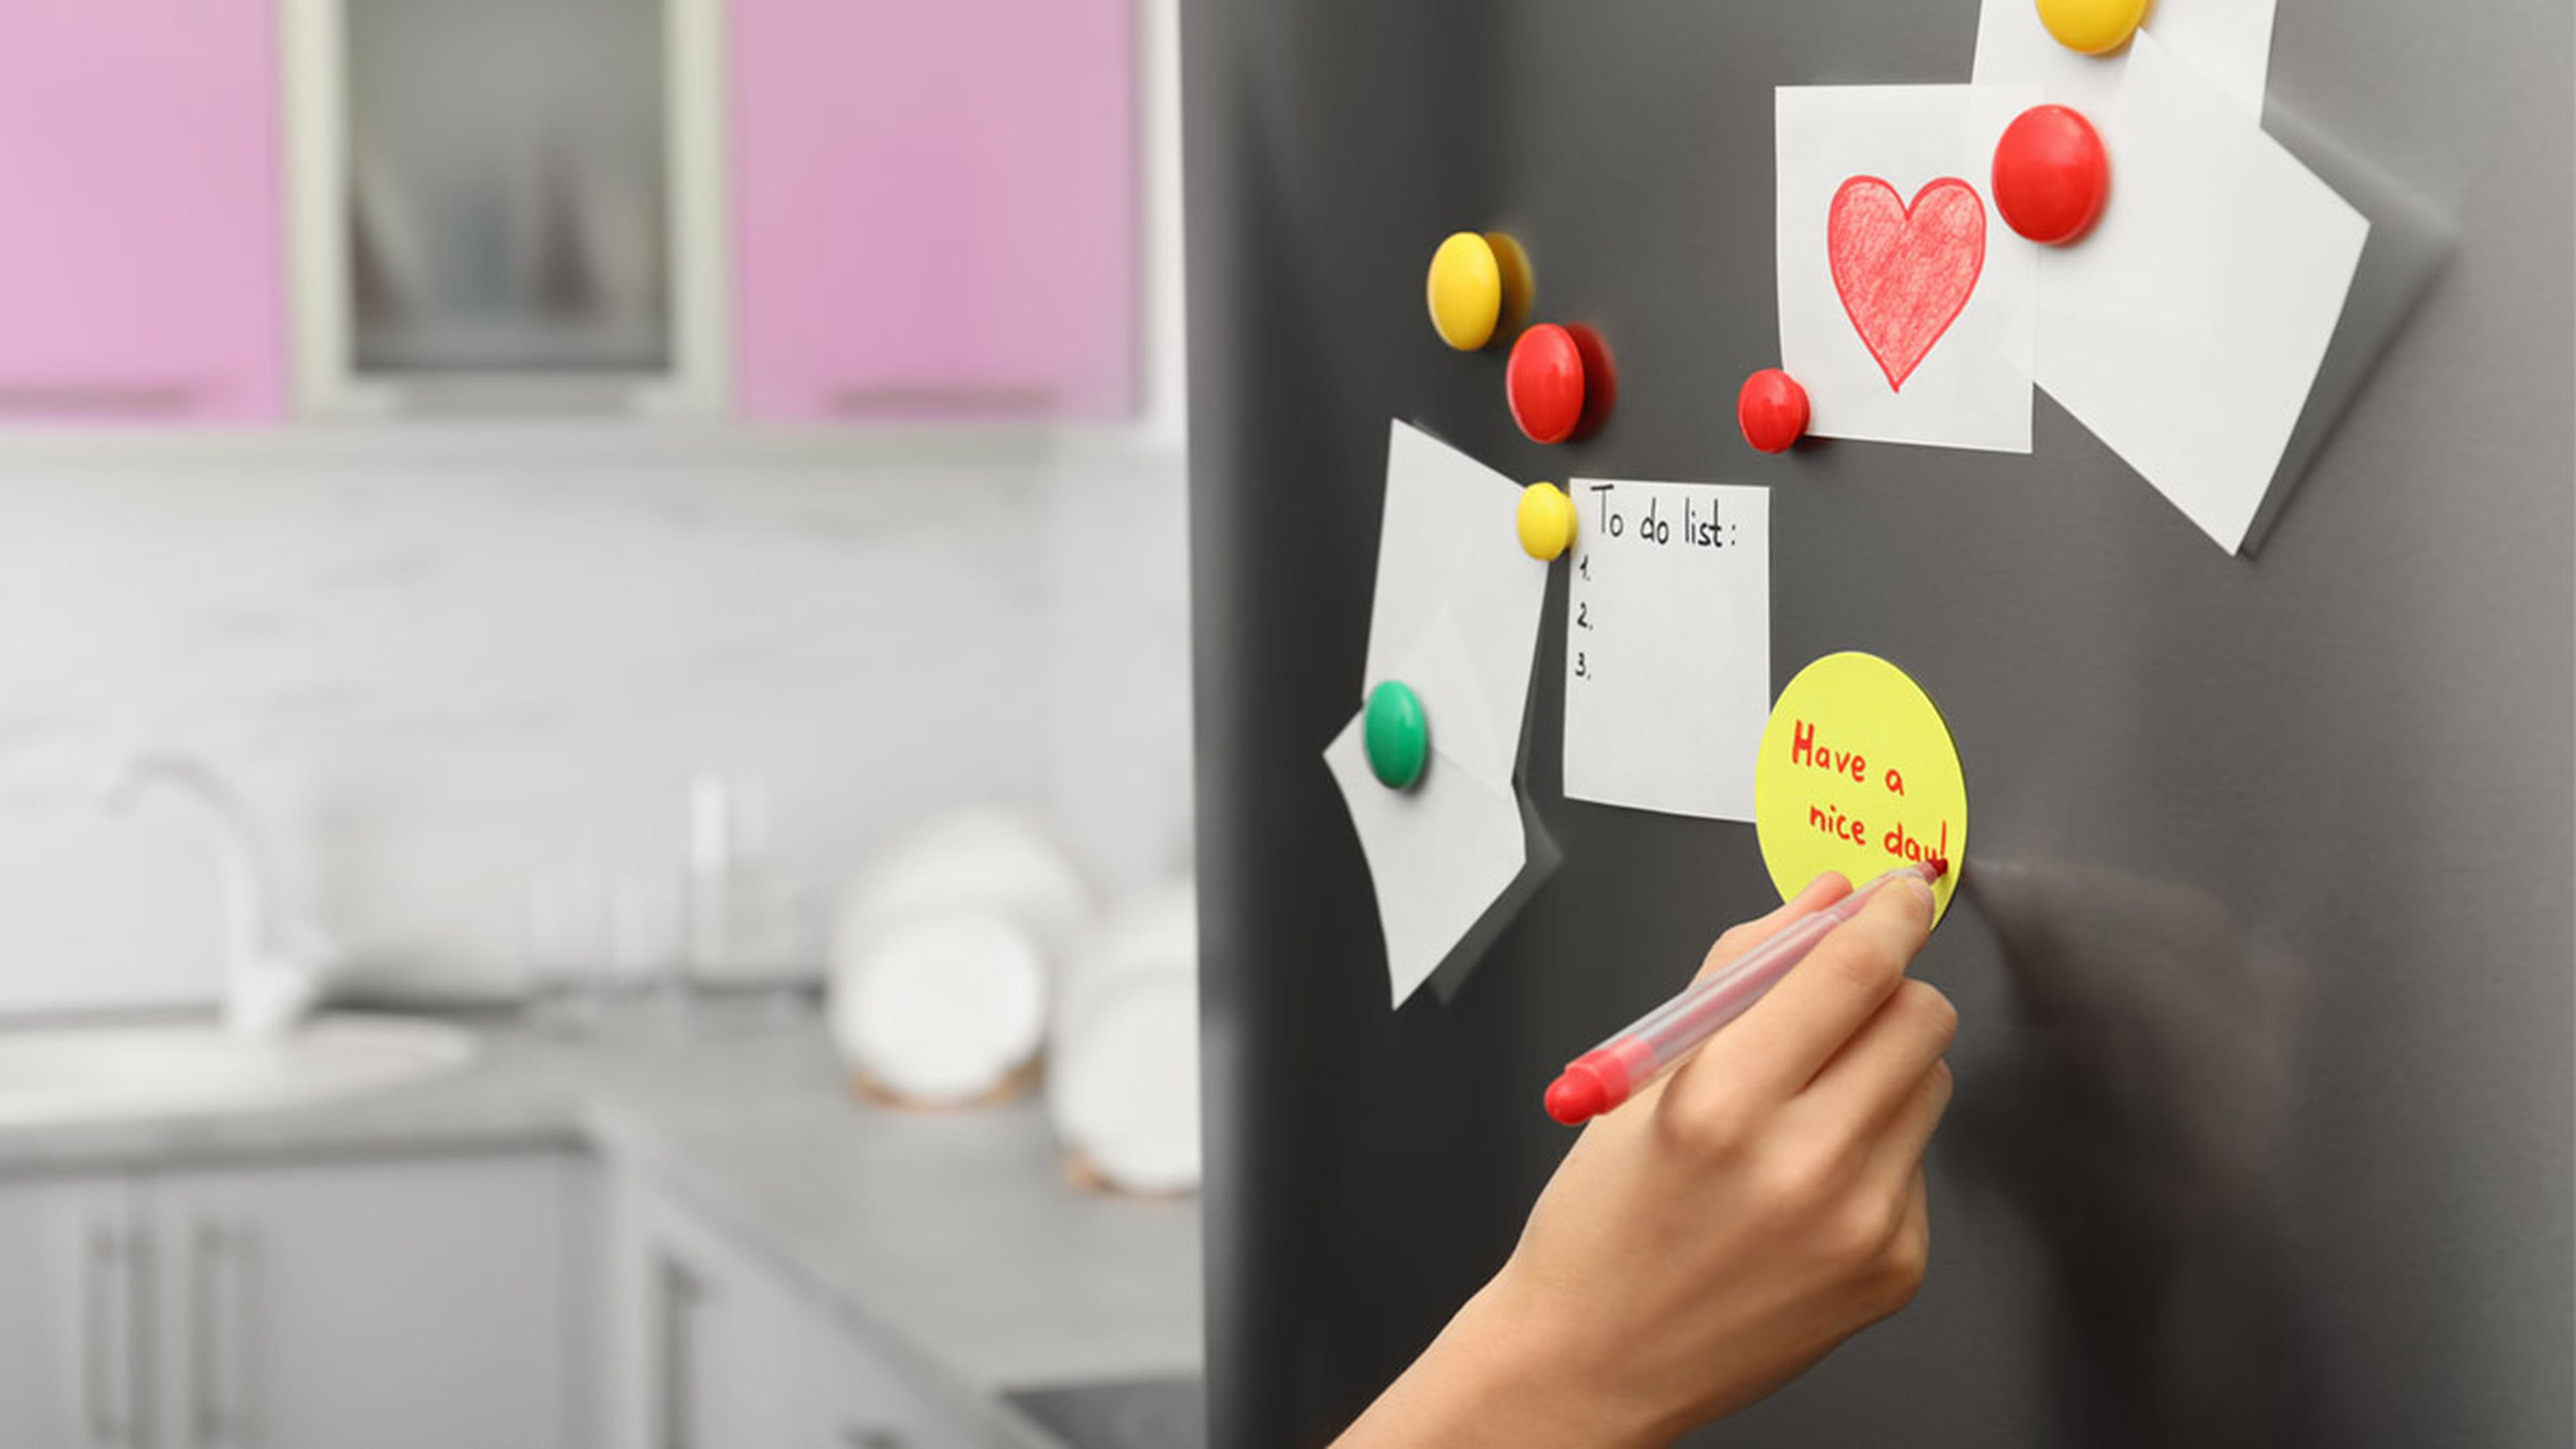 7 motivos para elegir un frigorífico conectado con pantalla, y 3 para no comprarlo todavía